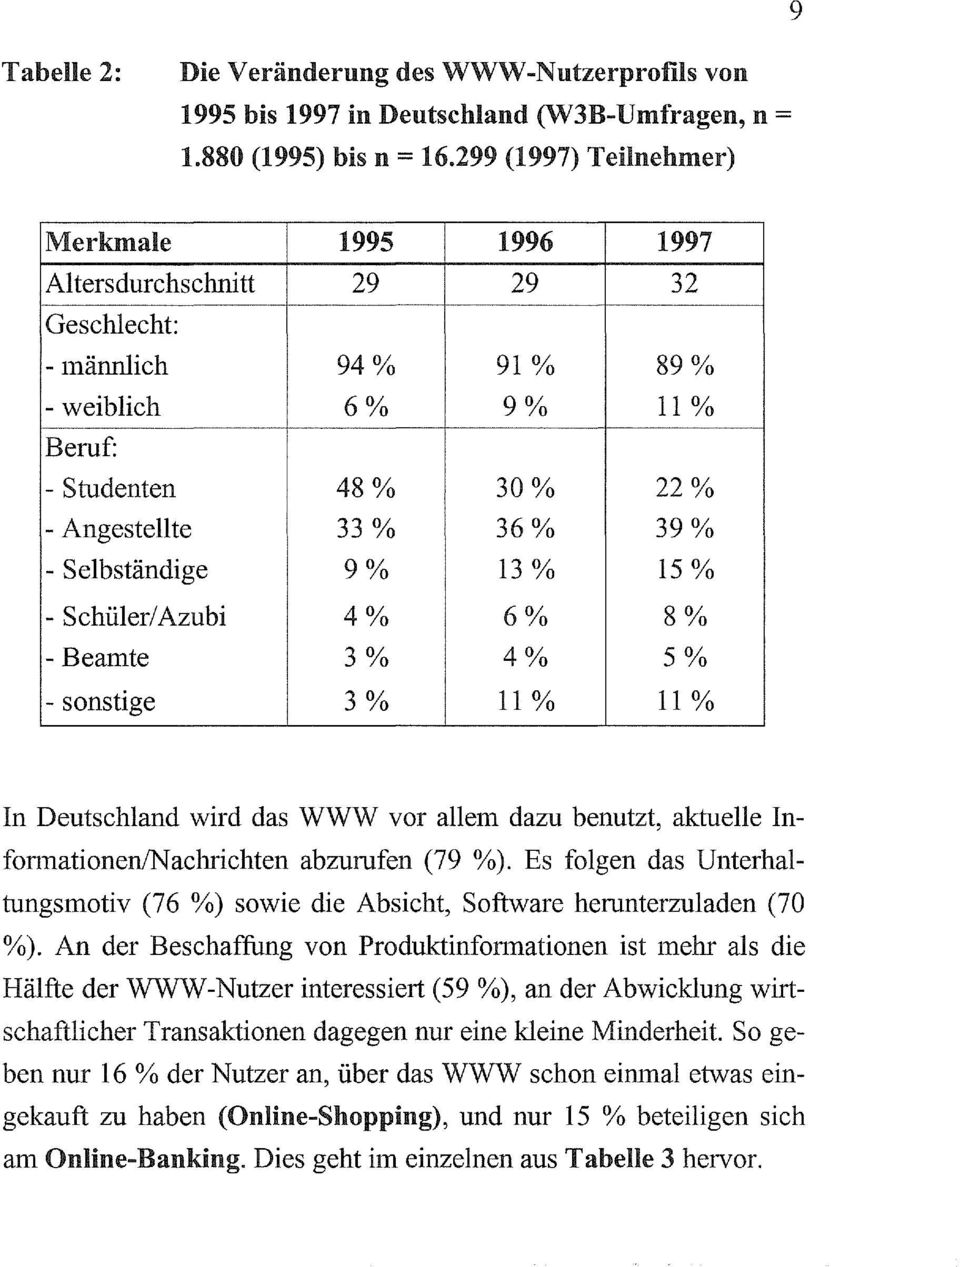 Selbständige 9% 13 % 15 % - Schüler/ Azubi 4% 6% 8 0/0 - Beamte 3% 4% 5% - sonstige 3% 11 % 11 % In Deutschland wird das WWW vor allein dazu benutzt, aktuelle InfonnationenlNachrichten abzurufen (79